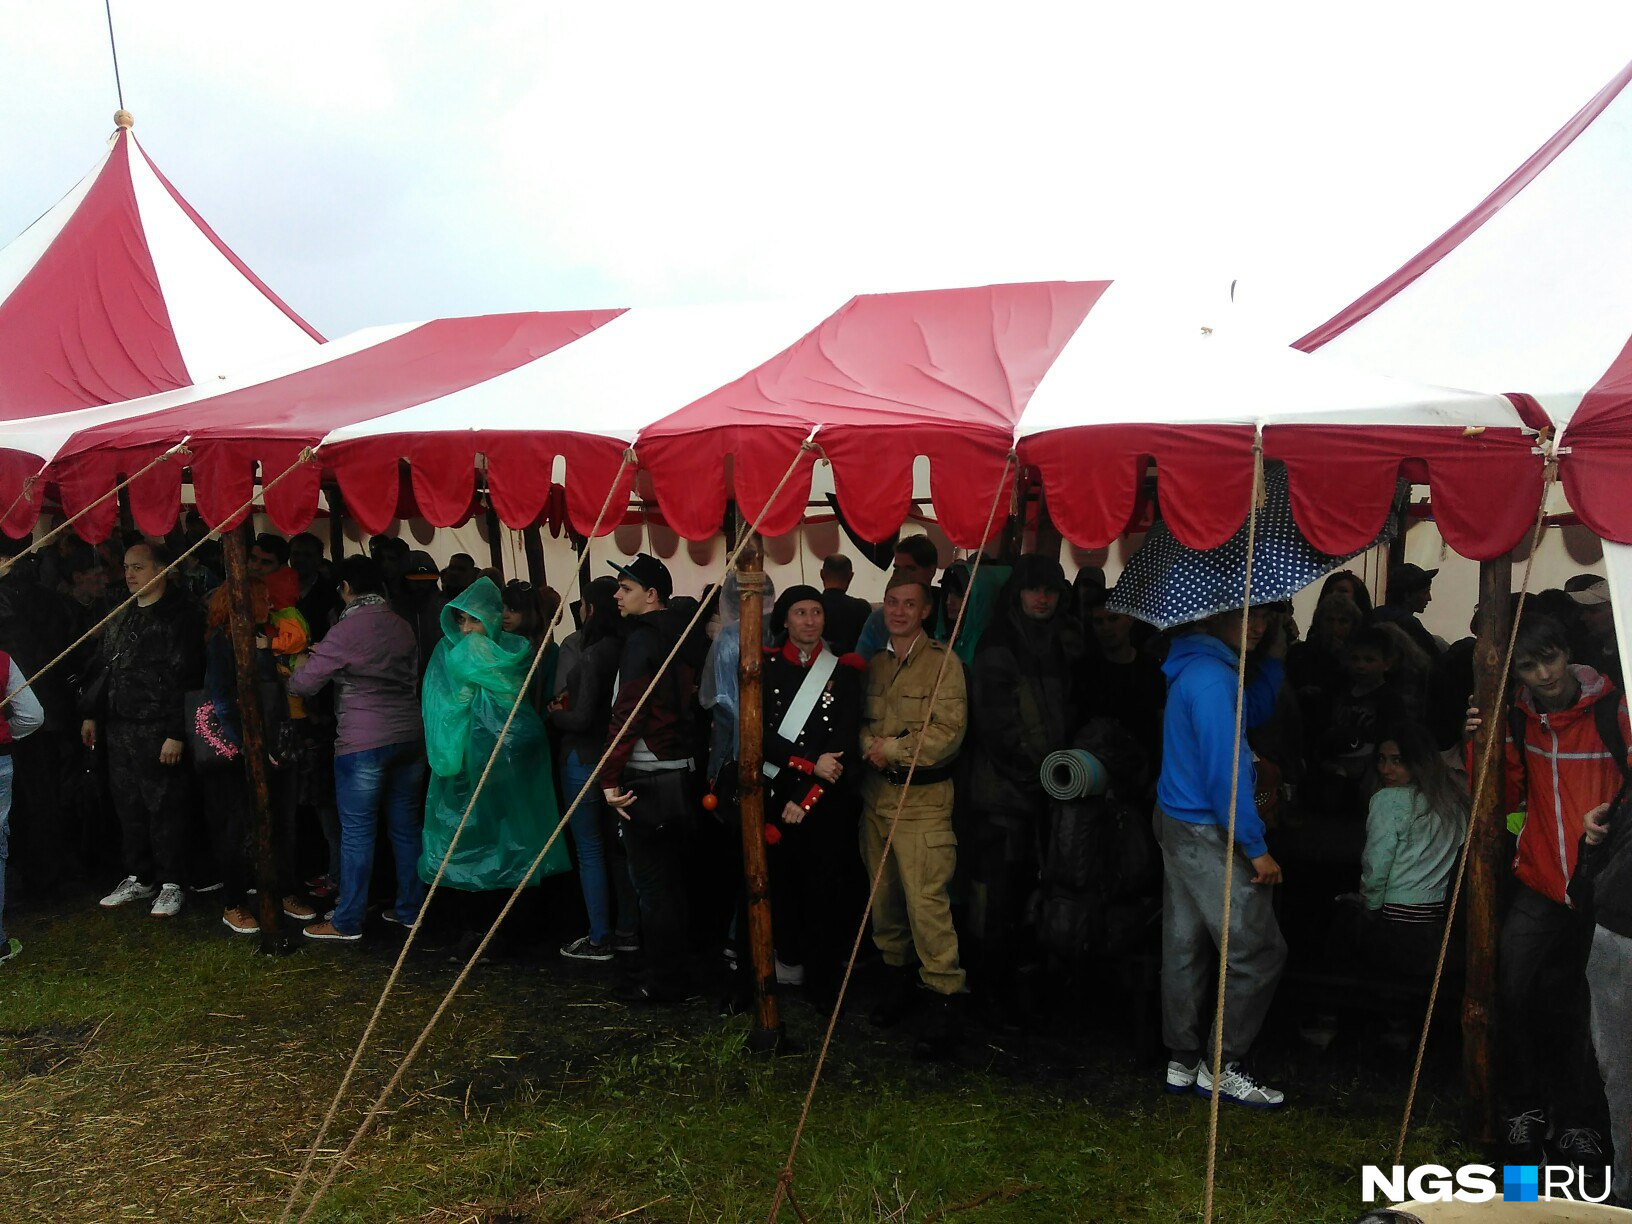 Участники фестиваля и зрители спасаются от дождя